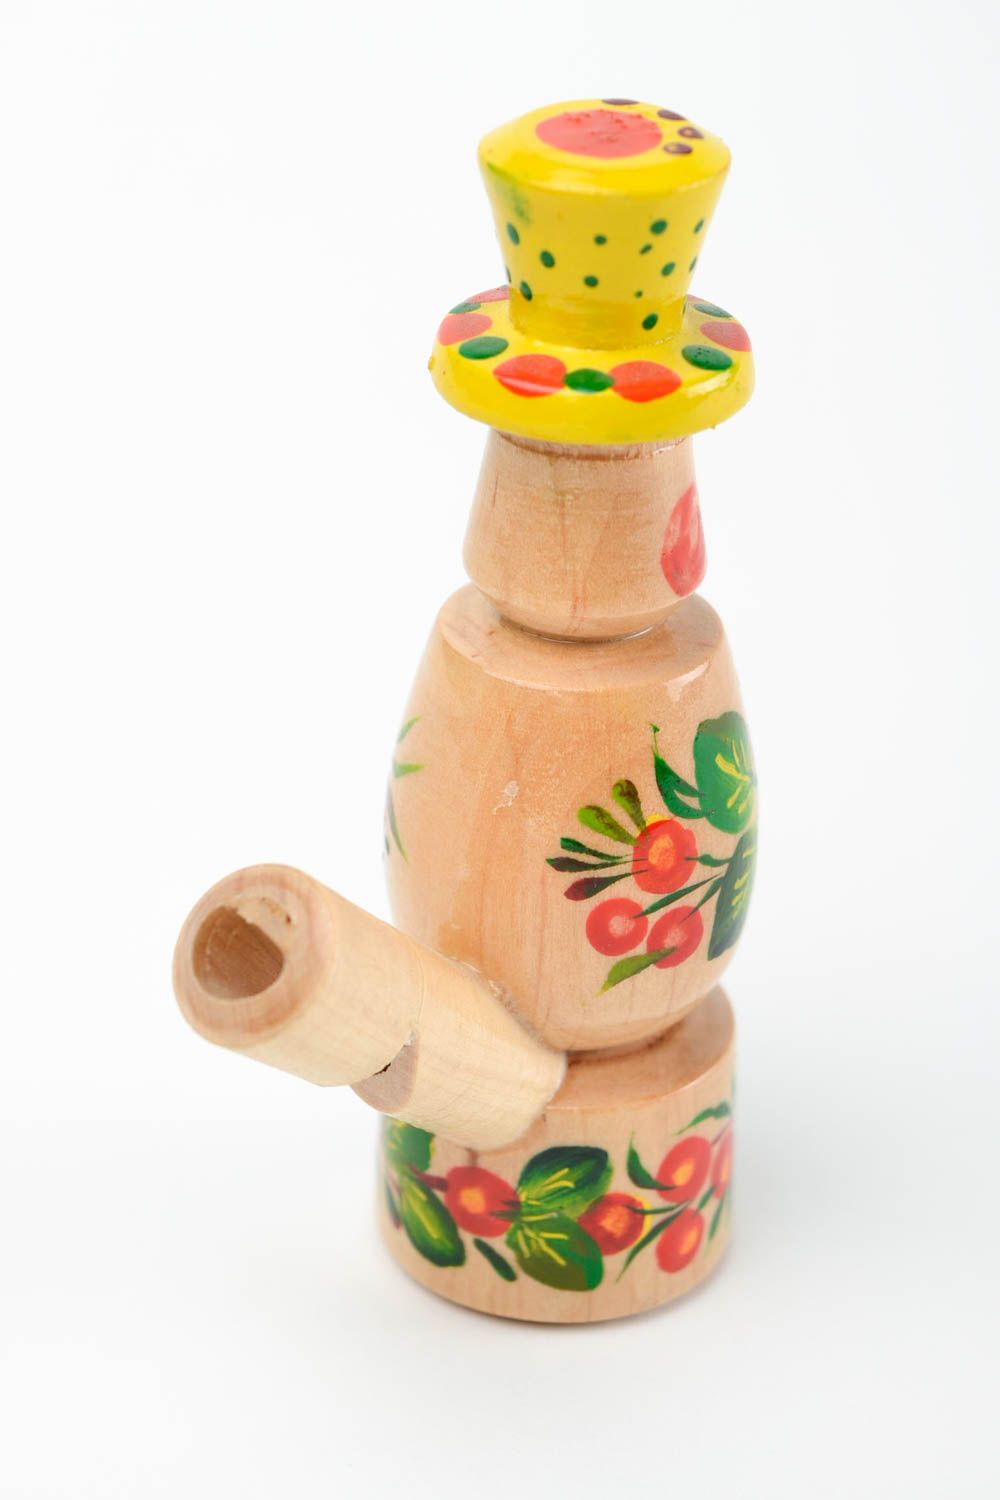 Silbato de madera pintado souvenir original instrumento musical artesanal foto 5